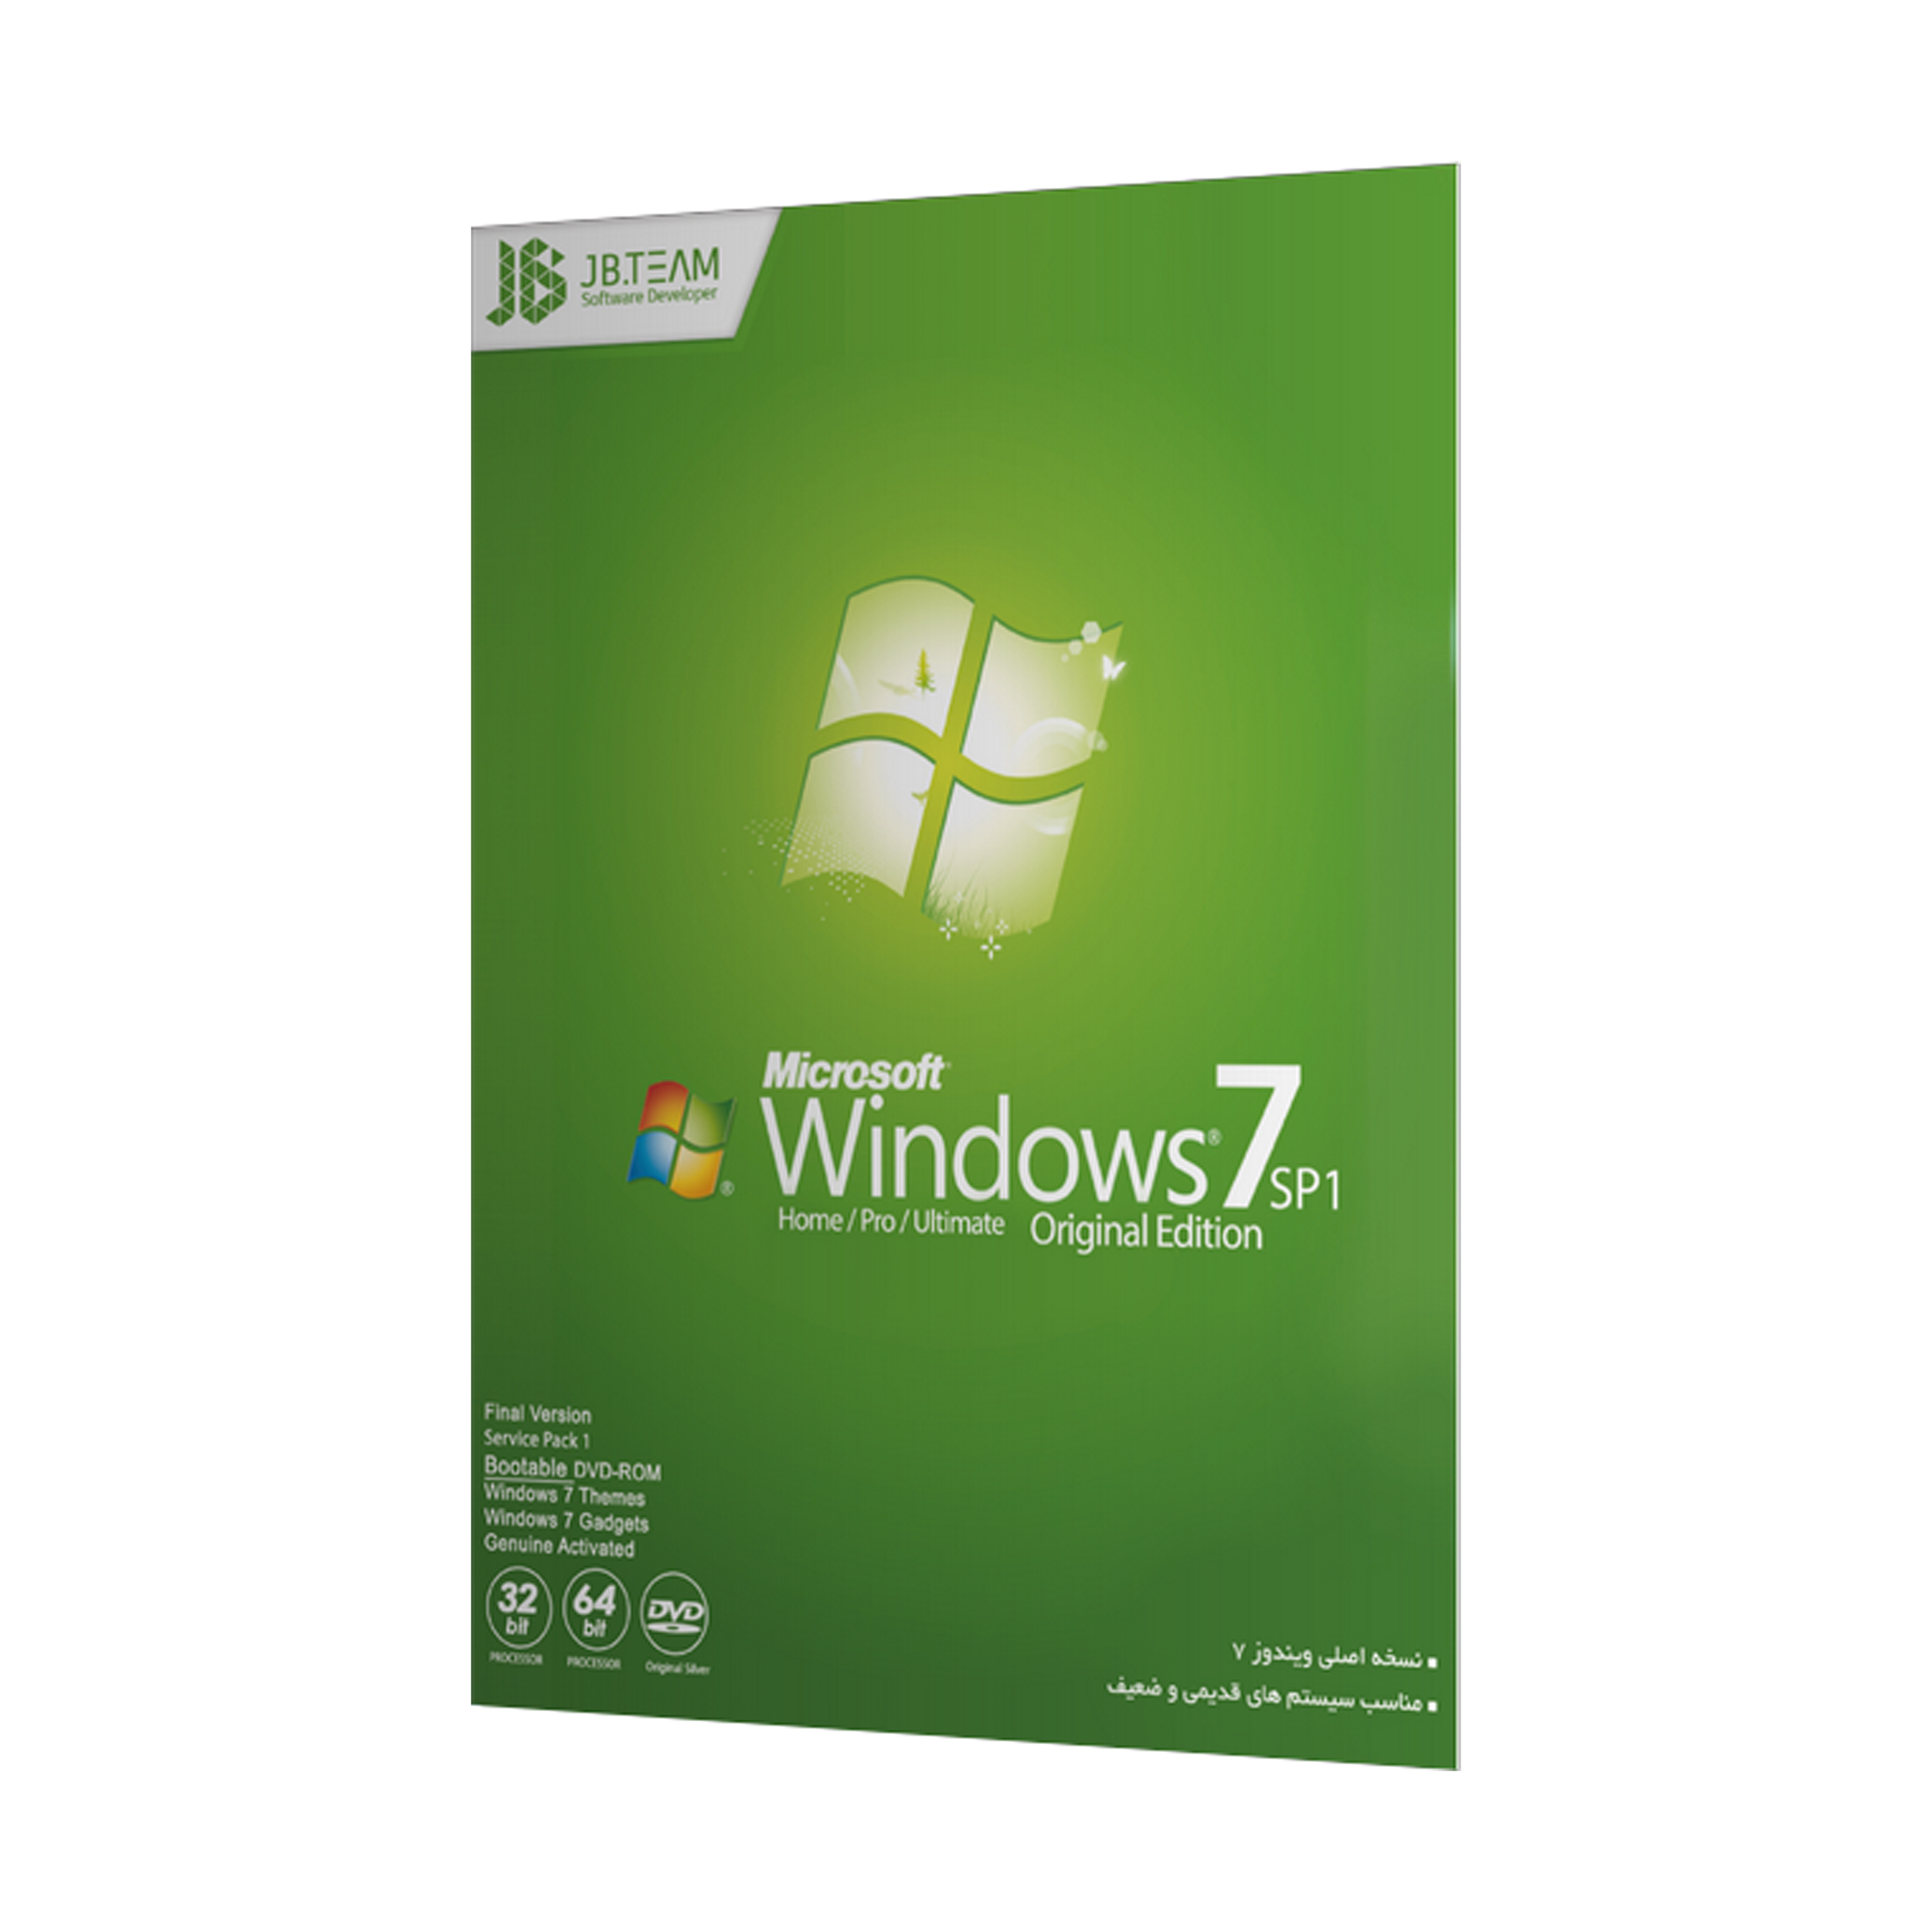 سيستم عامل Windows 7 SP1 نشر جي بي تيم